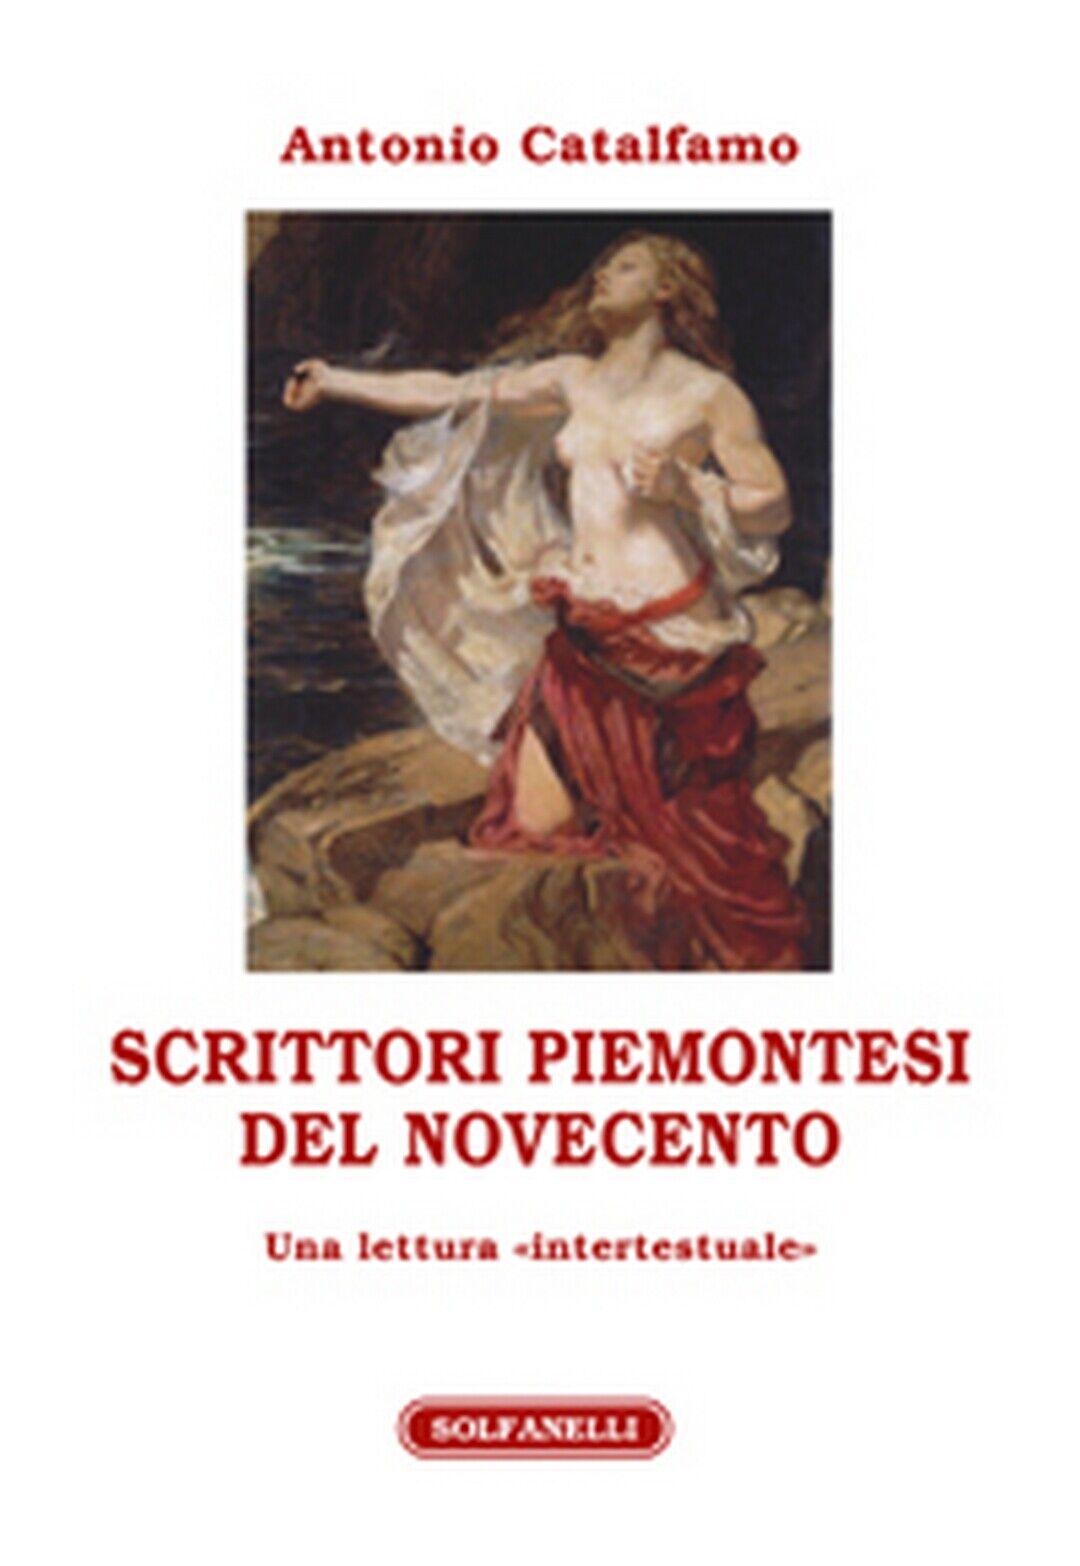 SCRITTORI PIEMONTESI DEL NOVECENTO  di Antonio Catalfamo,  Solfanelli Edizioni